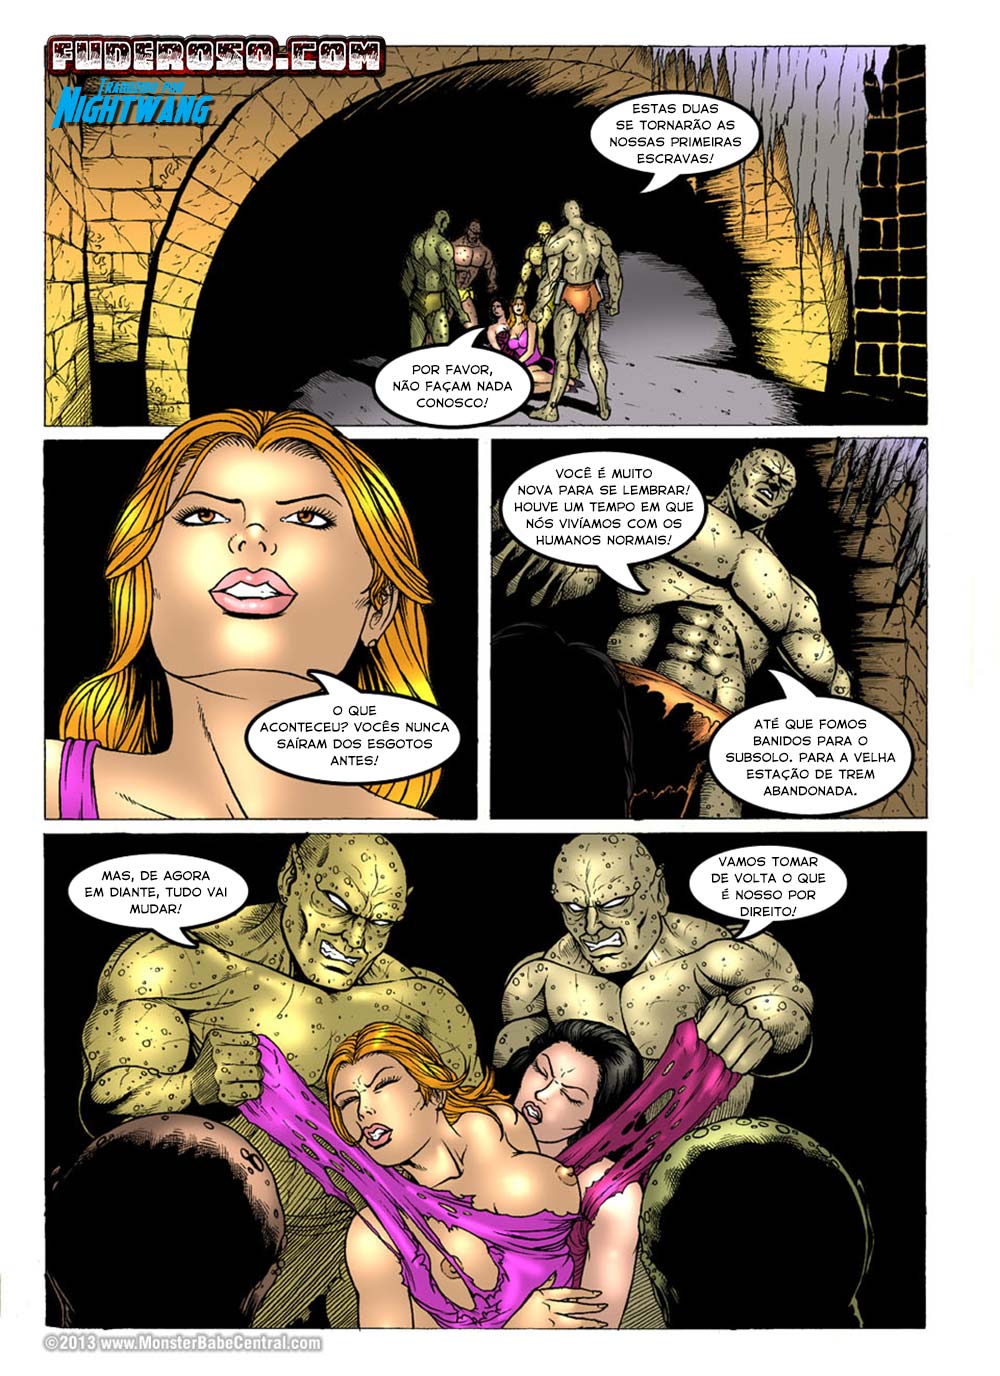 Mutant's World: A Aparição dos Mutantes - Parte 1 1